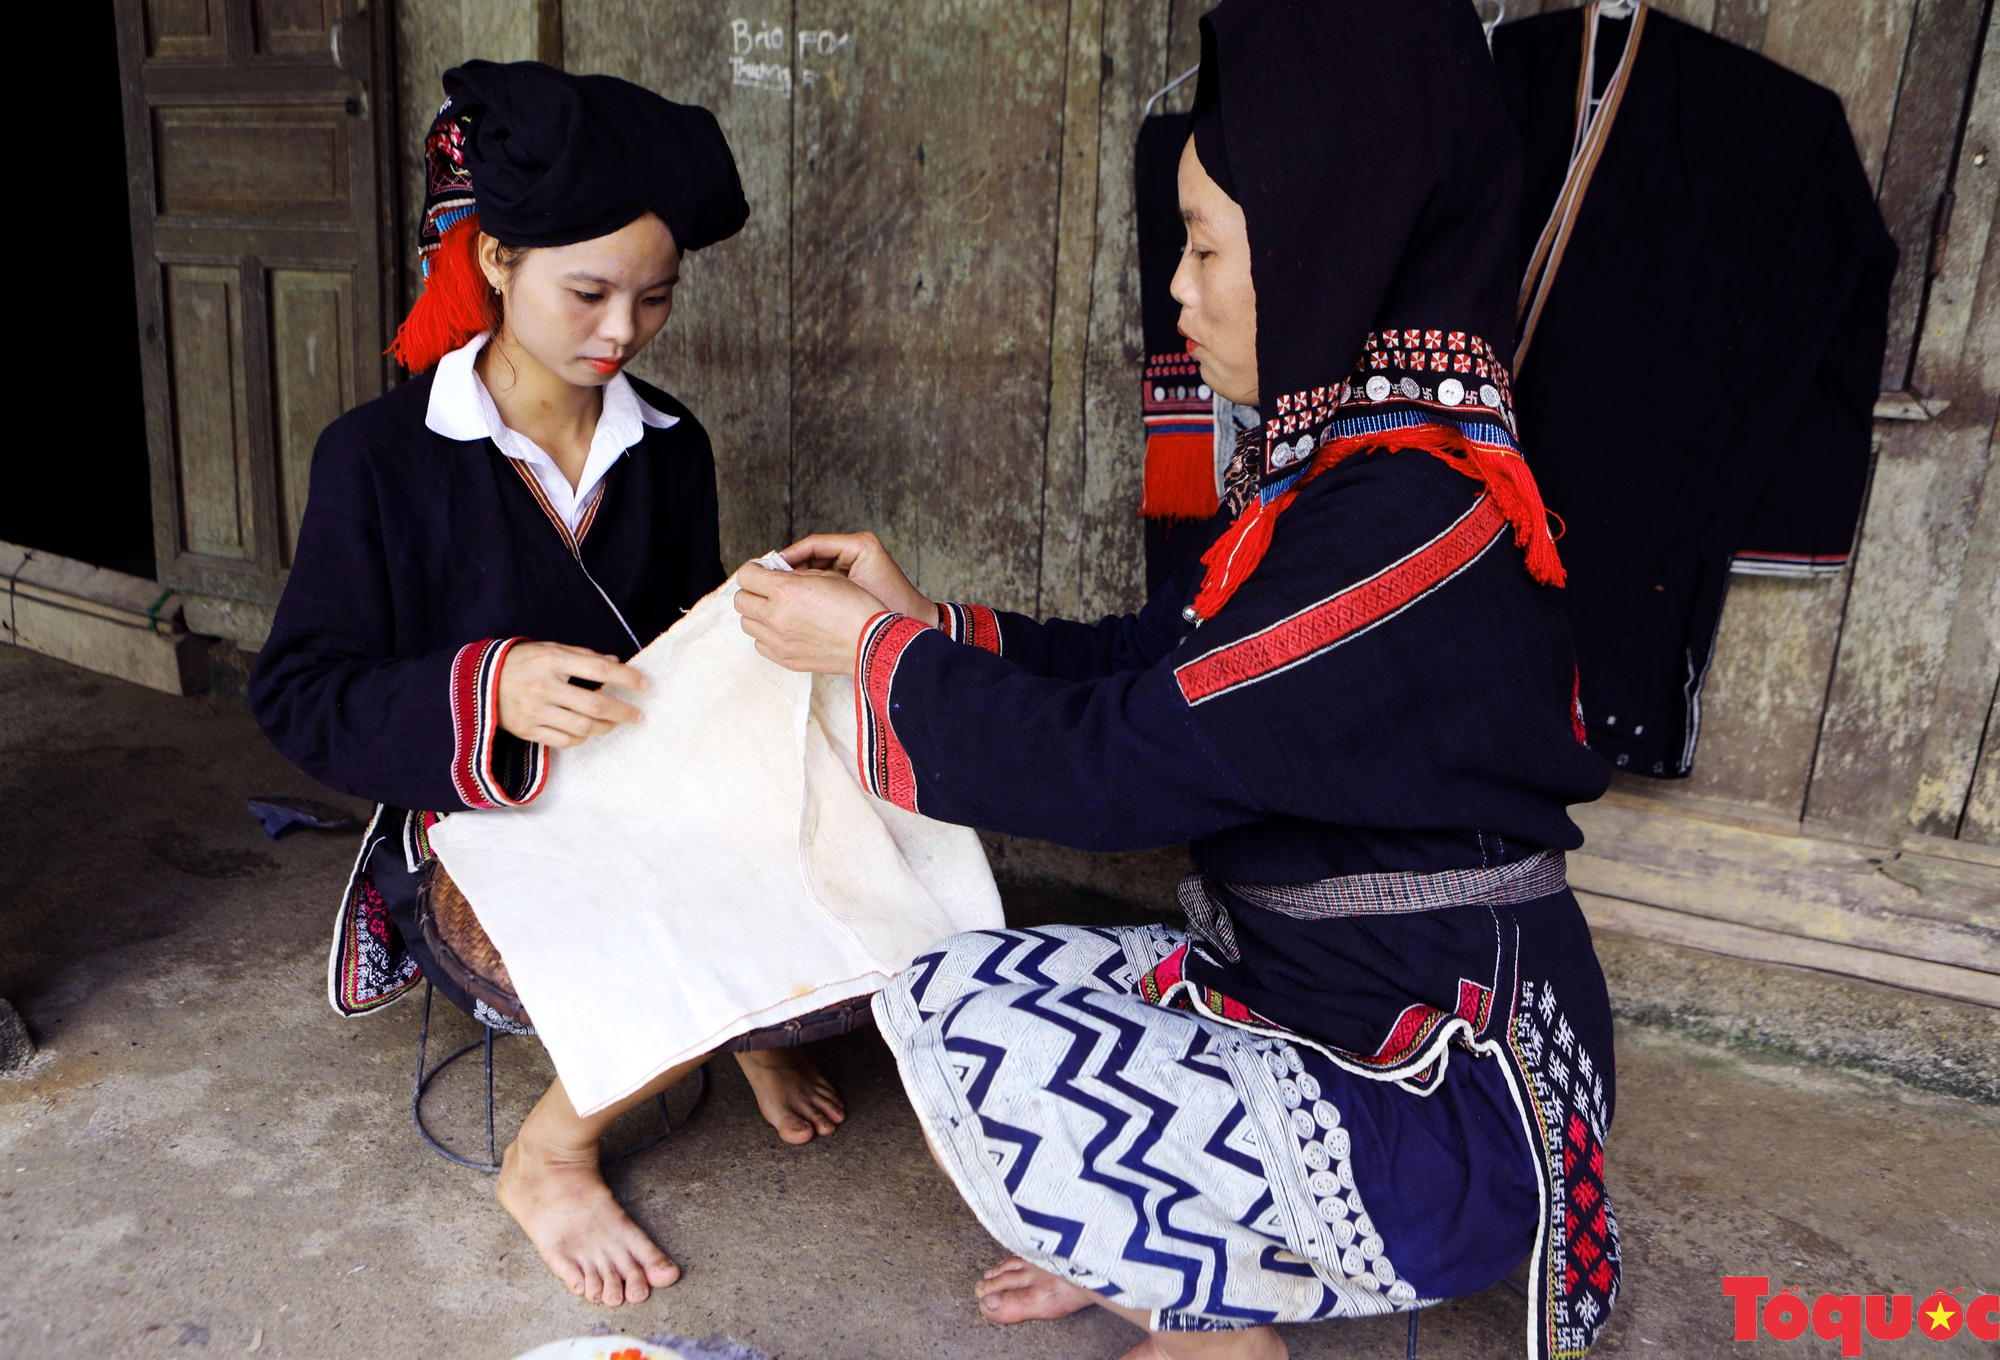 In vải bằng sáp ong nét đẹp văn hóa của đồng bào Dao Tiền Phú Thọ  - Ảnh 1.